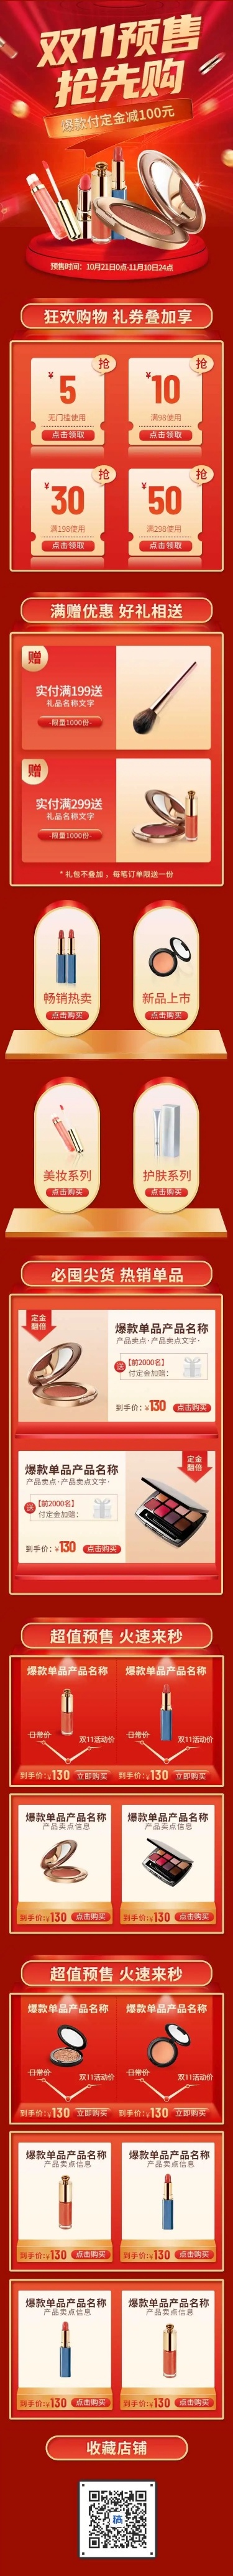 H5长页喜庆周年庆产品促销美妆电商详情页